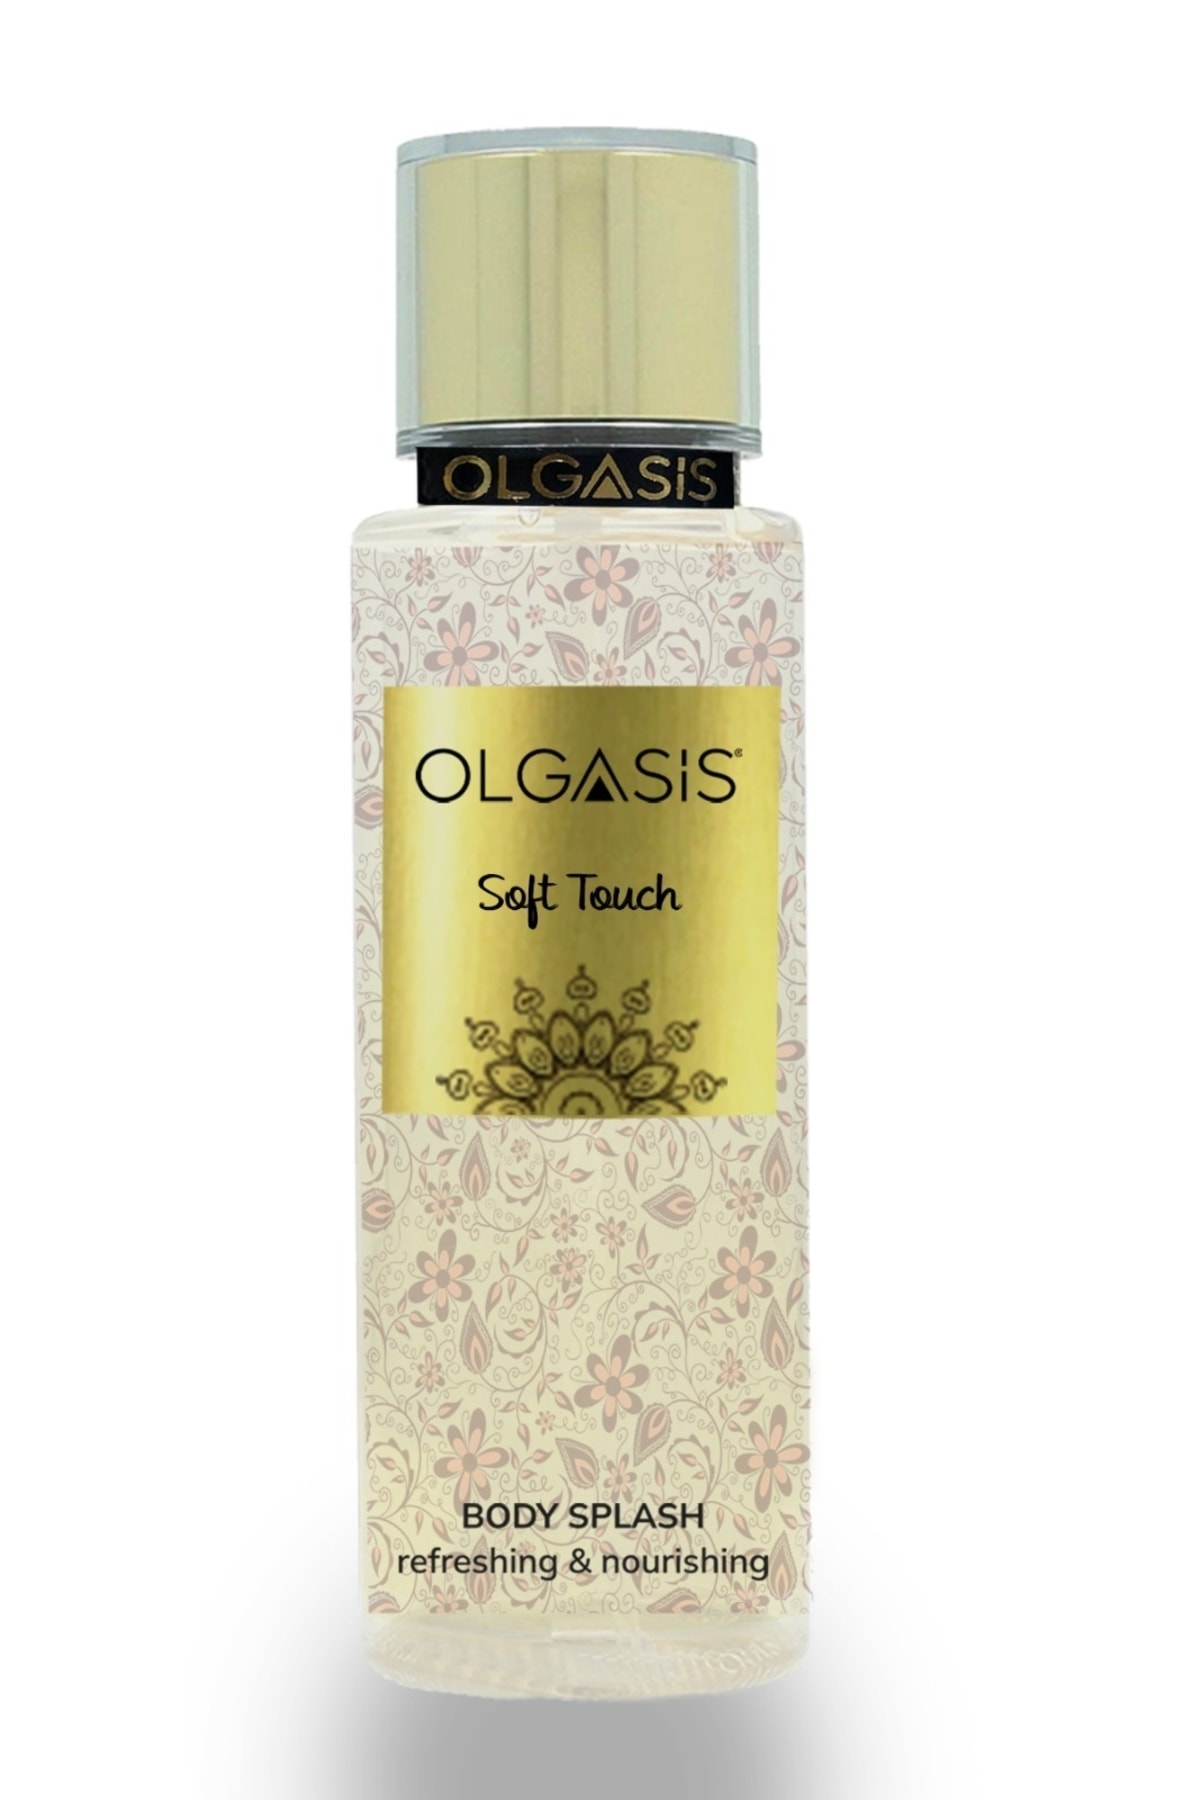 Olgasis Soft Touch Body Splash Çiçeksi Yumuşak Çiçekler Vücut Spreyi Yüksek Esans Kalıcı Body Mist 250 Ml